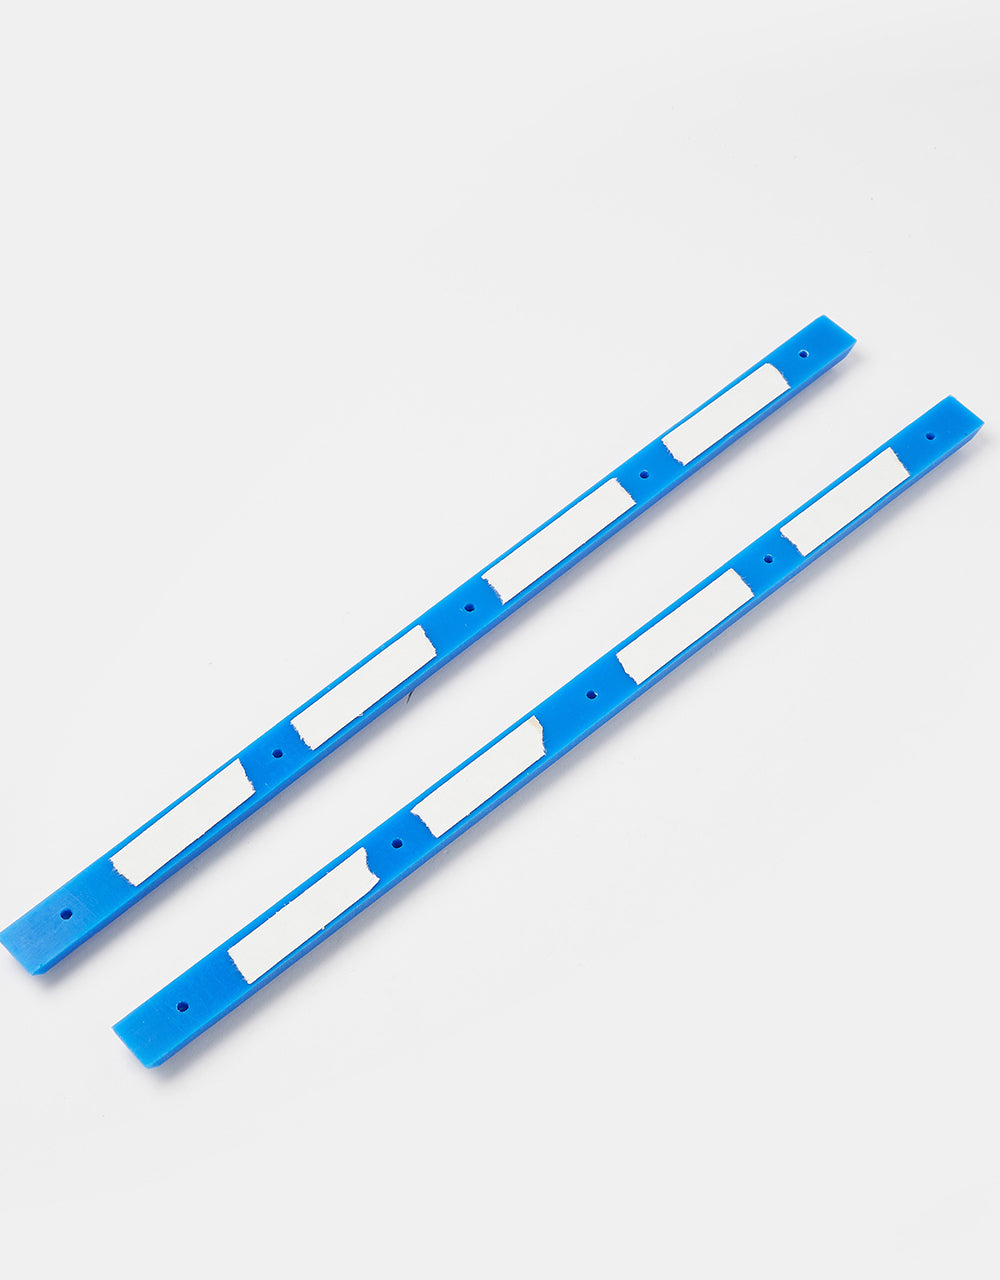 Lil Jawns Standard Jawns Deck Rails - Blue